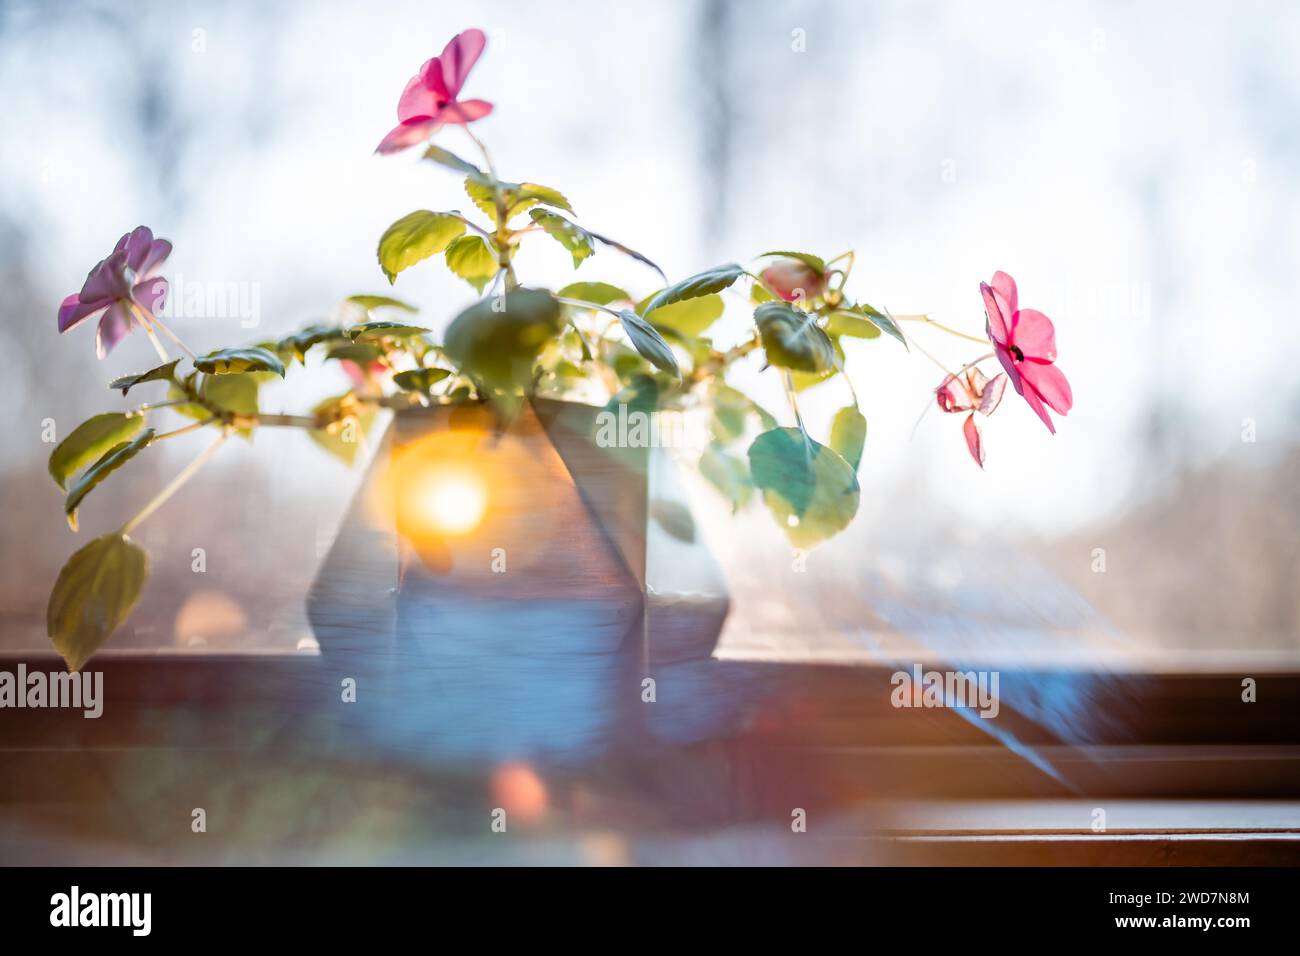 Fiori rosa di impatiens in fiore sul davanzale con luce riflessa Foto Stock